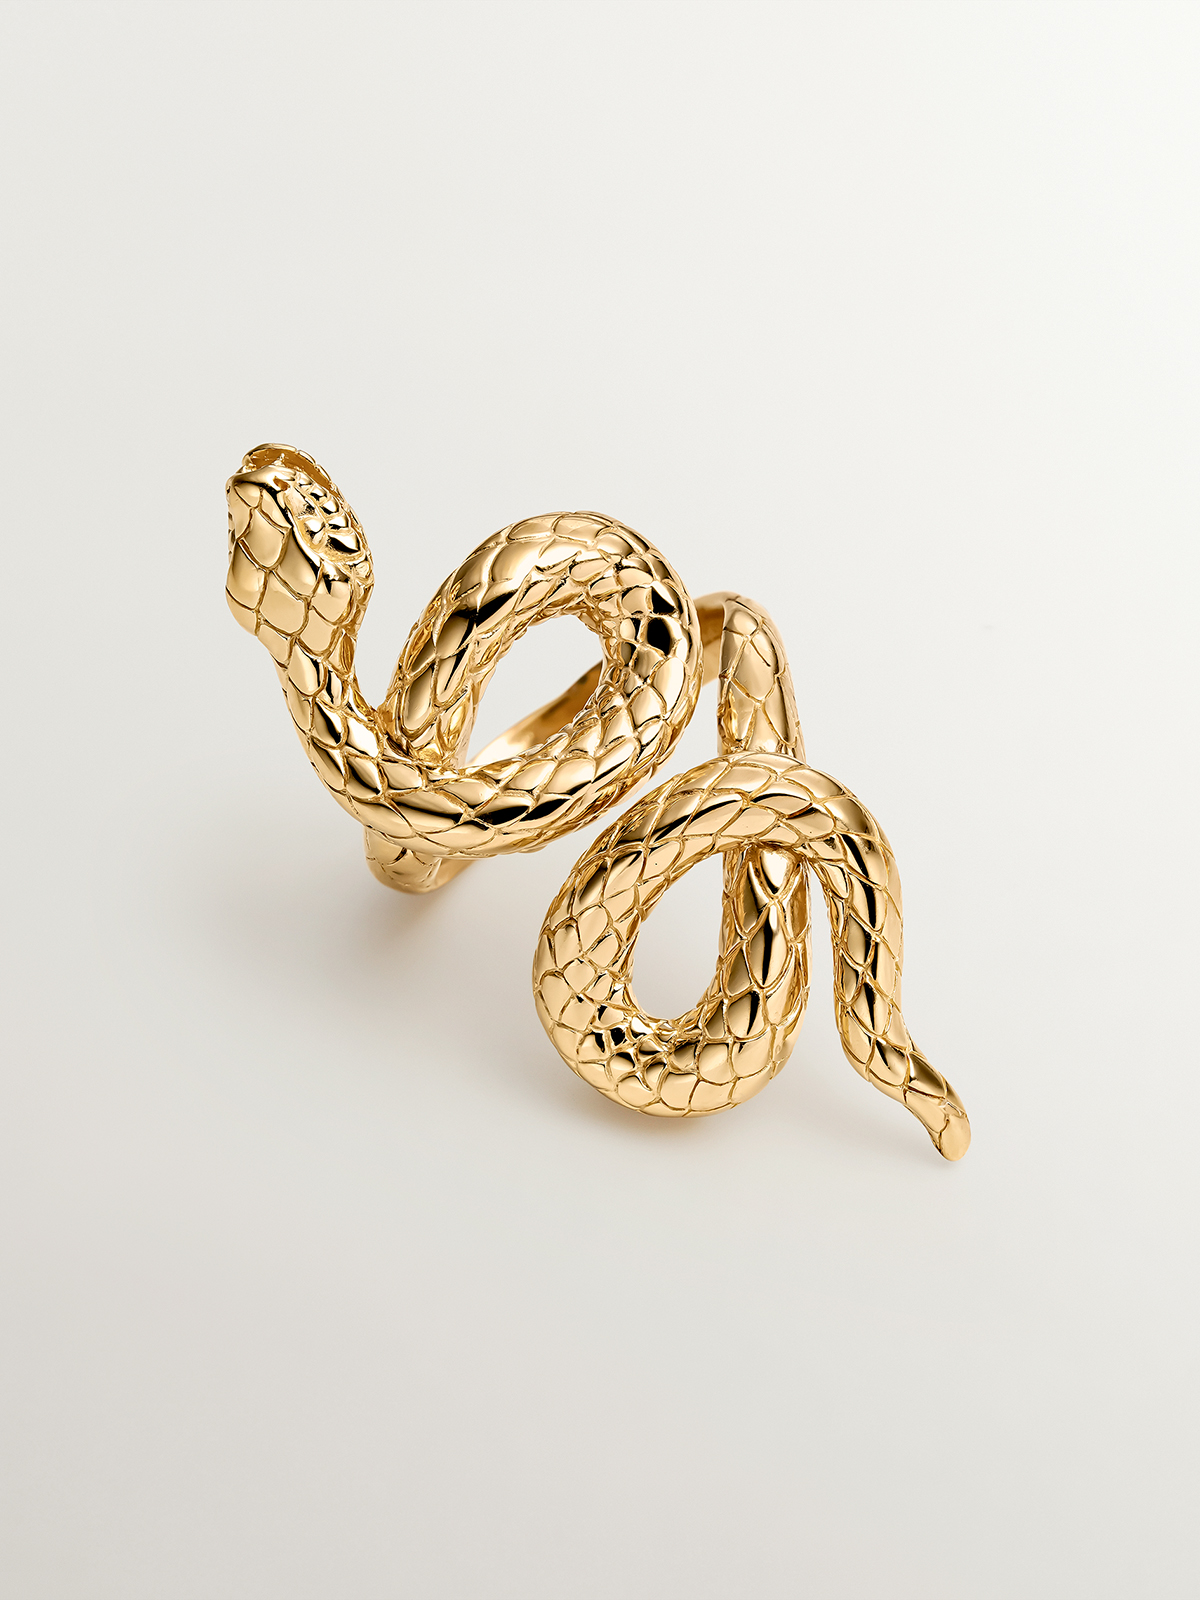 Anillo lanzadera de plata 925 bañada en oro amarillo de 18K con forma de serpiente